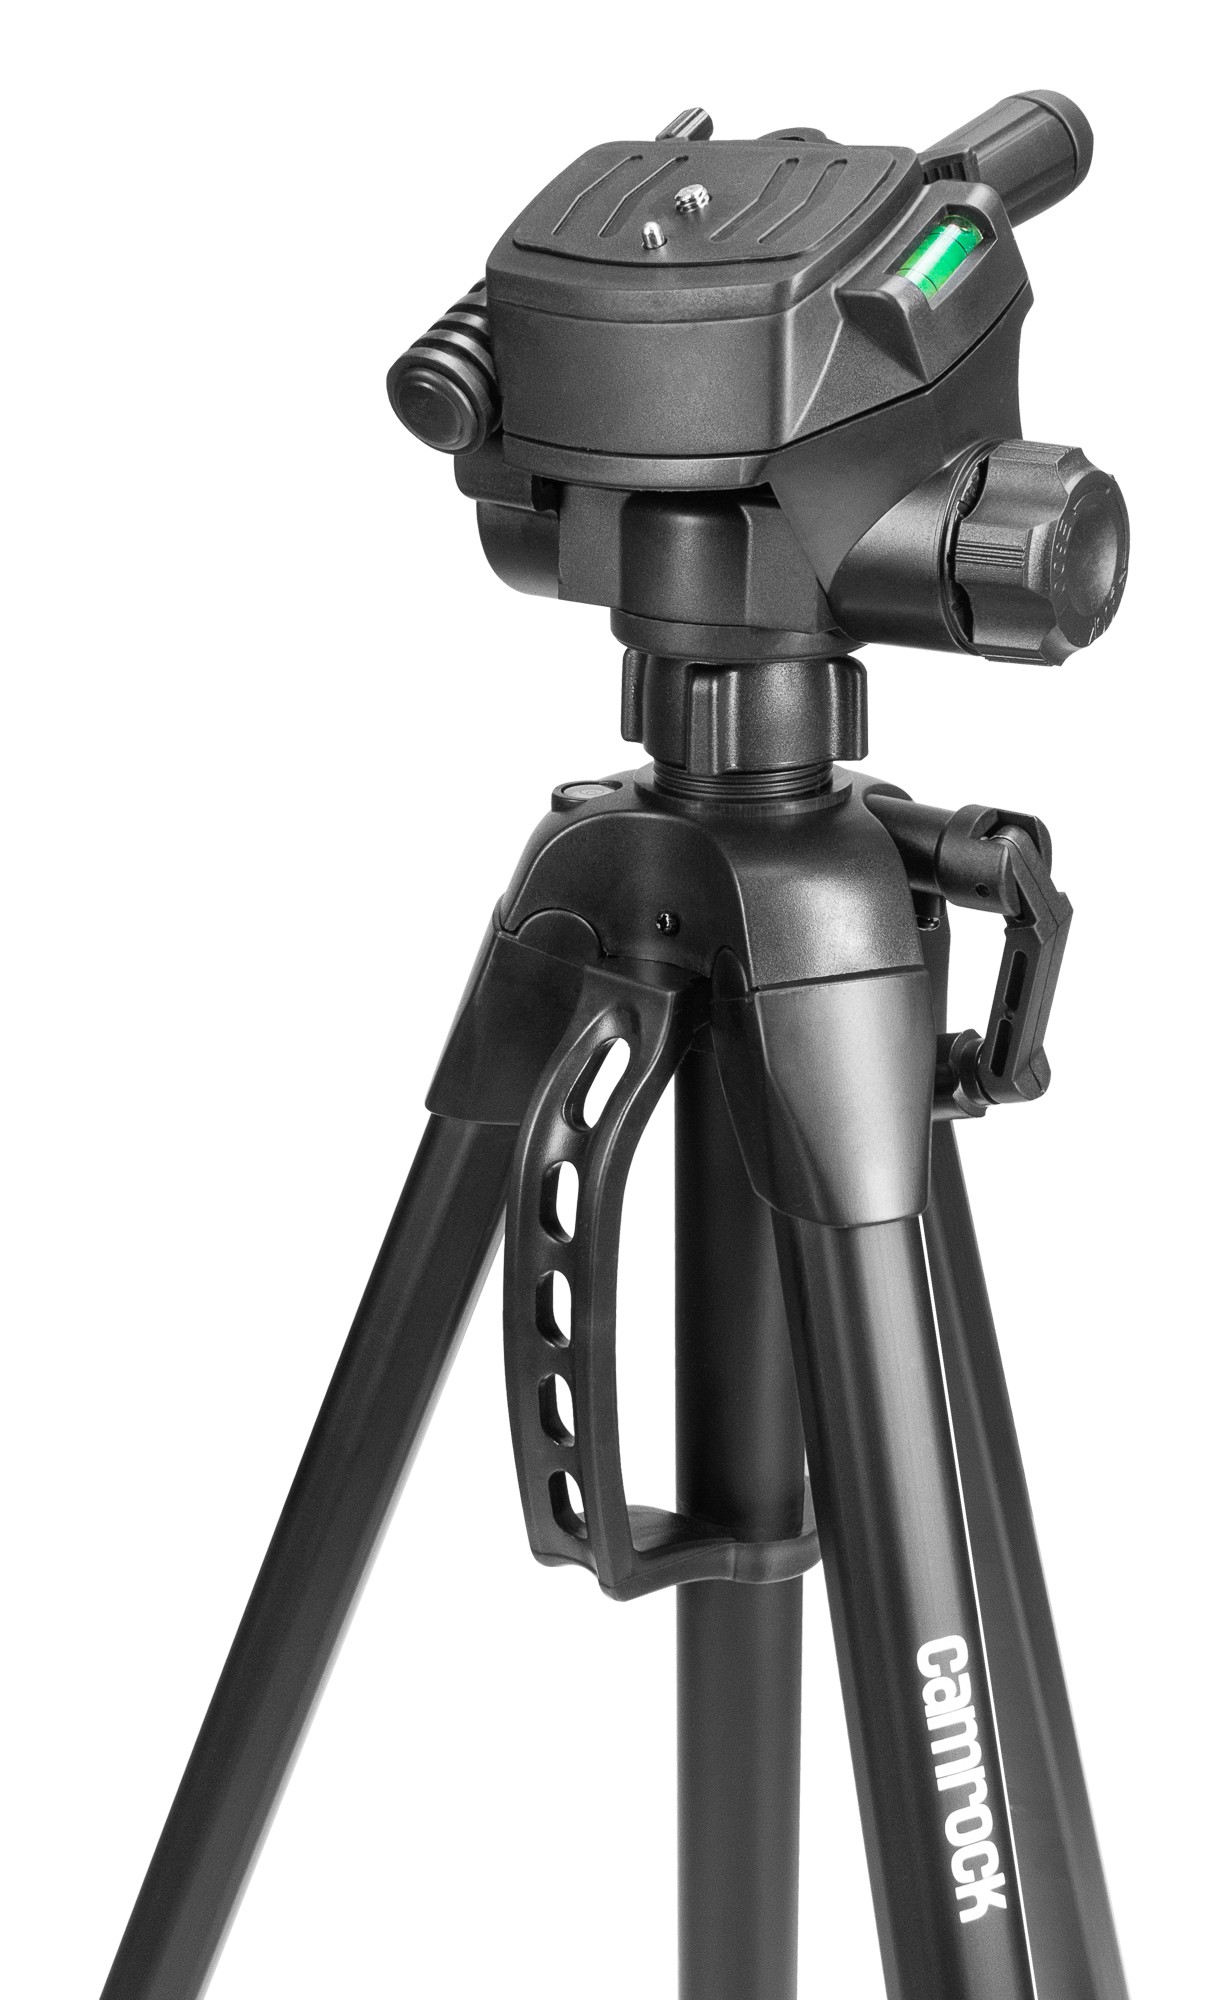 Czarny statyw CAMROCK TE68 do aparatów fotograficznych oraz kamer